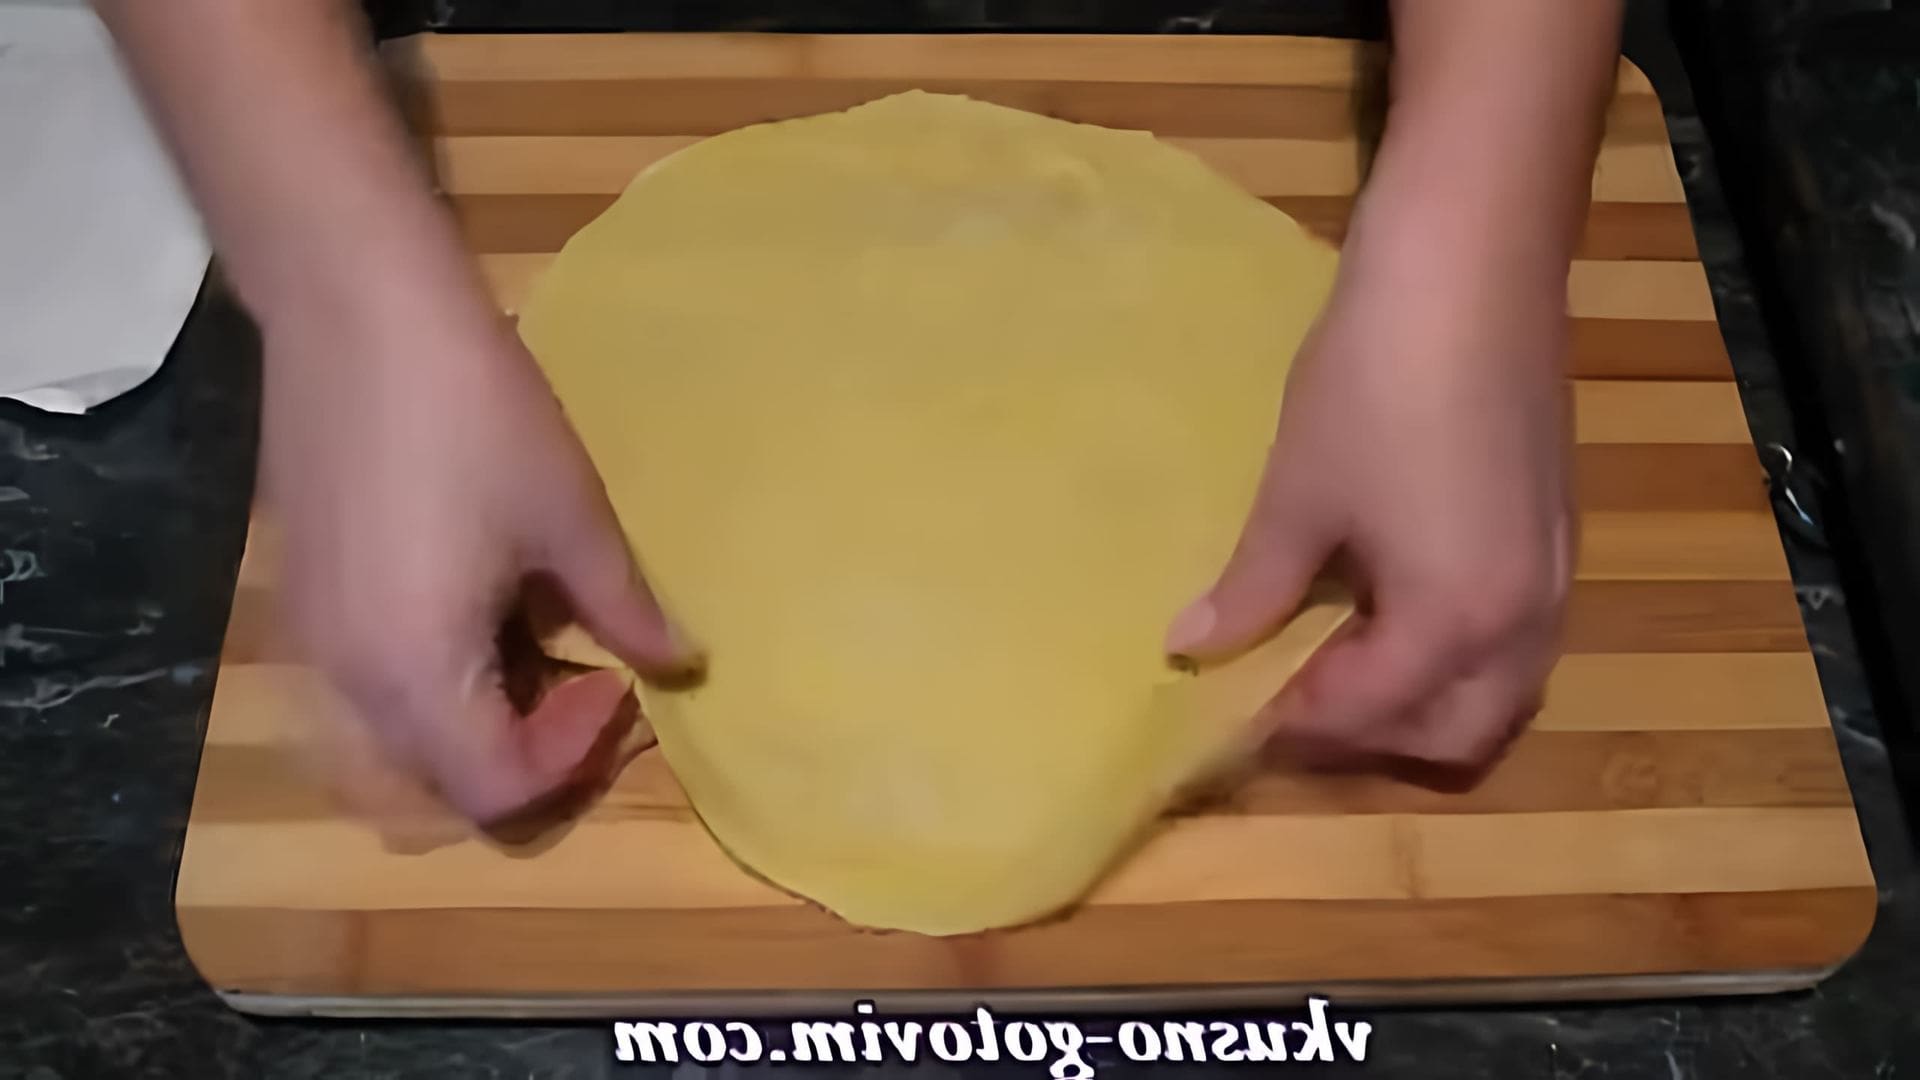 В этом видео демонстрируется процесс приготовления домашней лапши